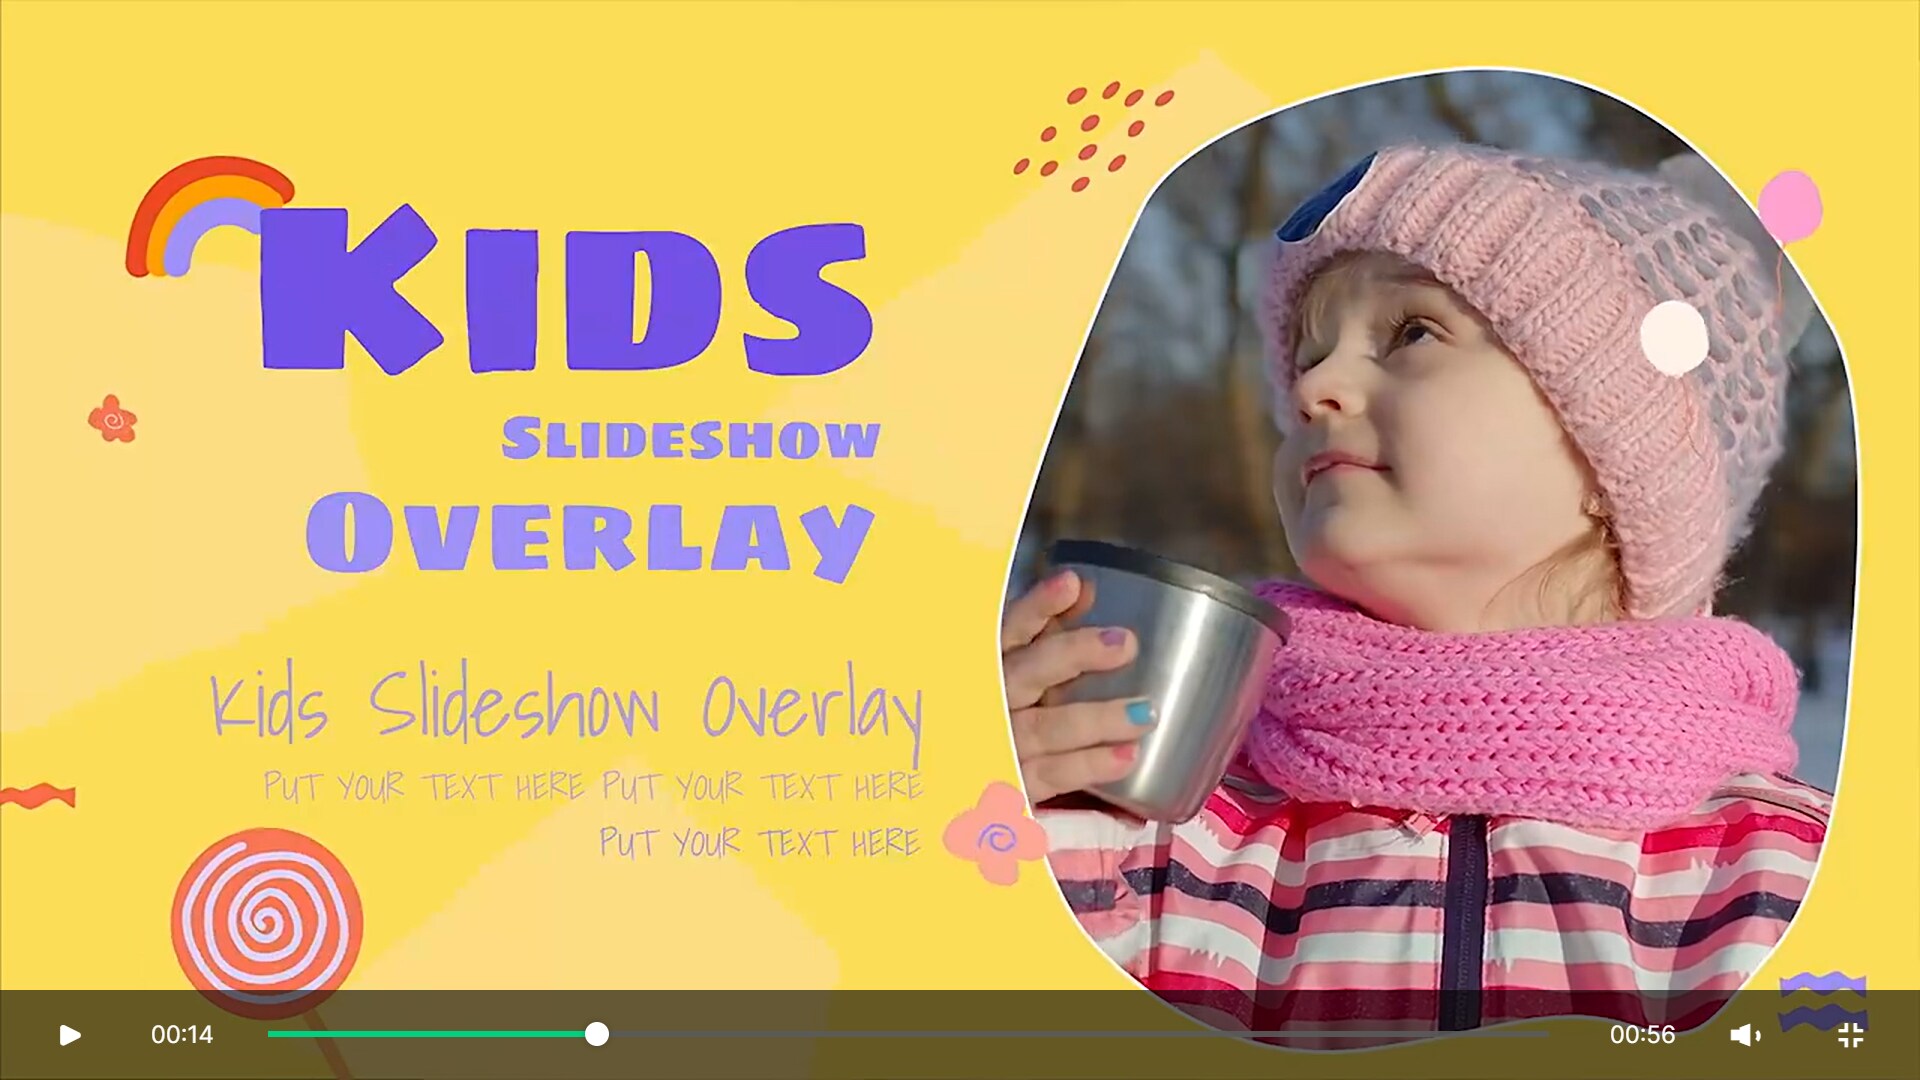 Kids slideshow pack by wondershare filmora